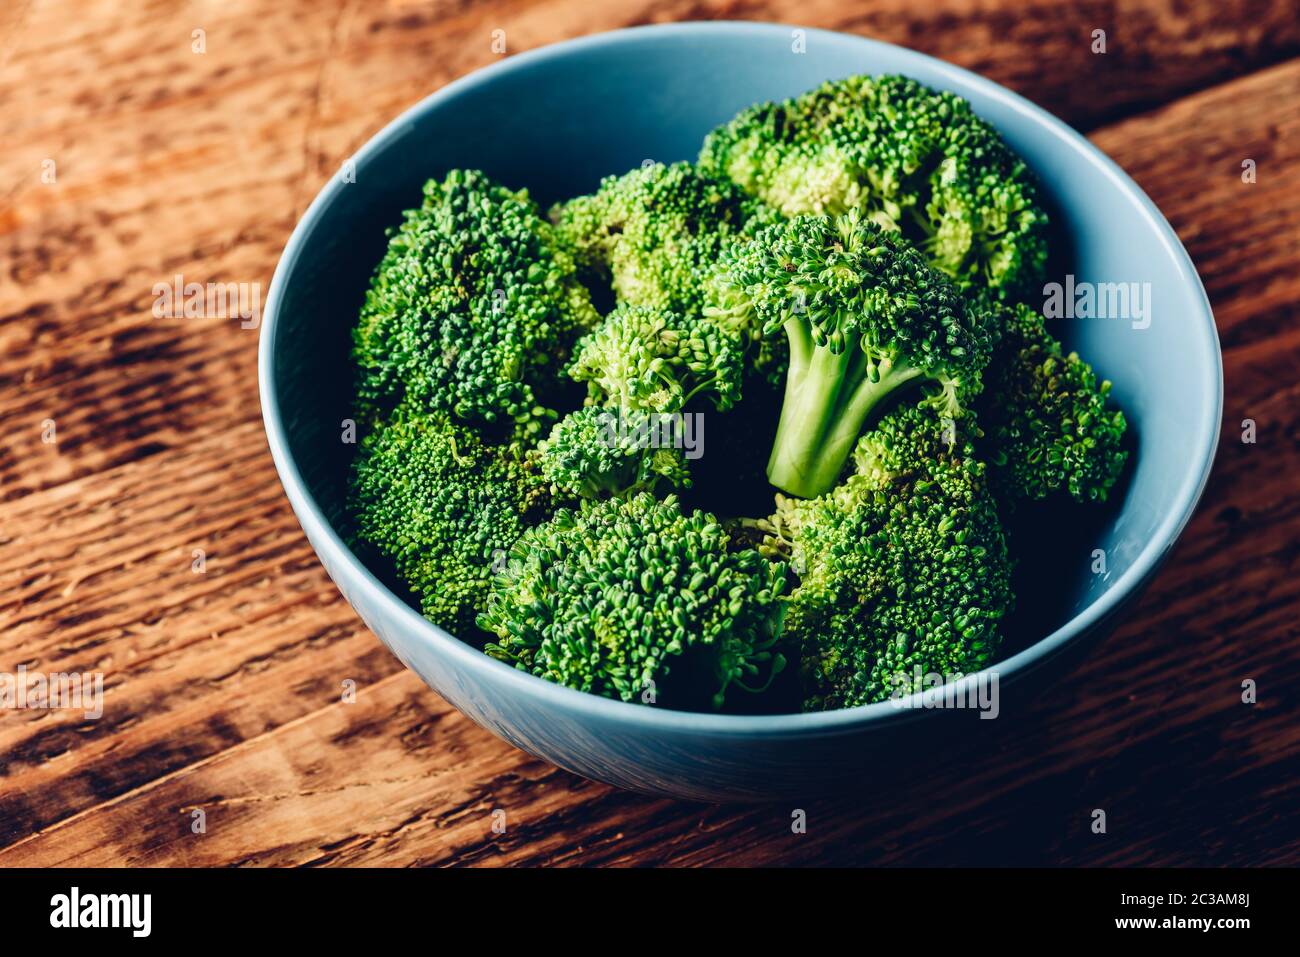 Le brocoli frais dans un bol prêt à être préparé pour une recette Banque D'Images